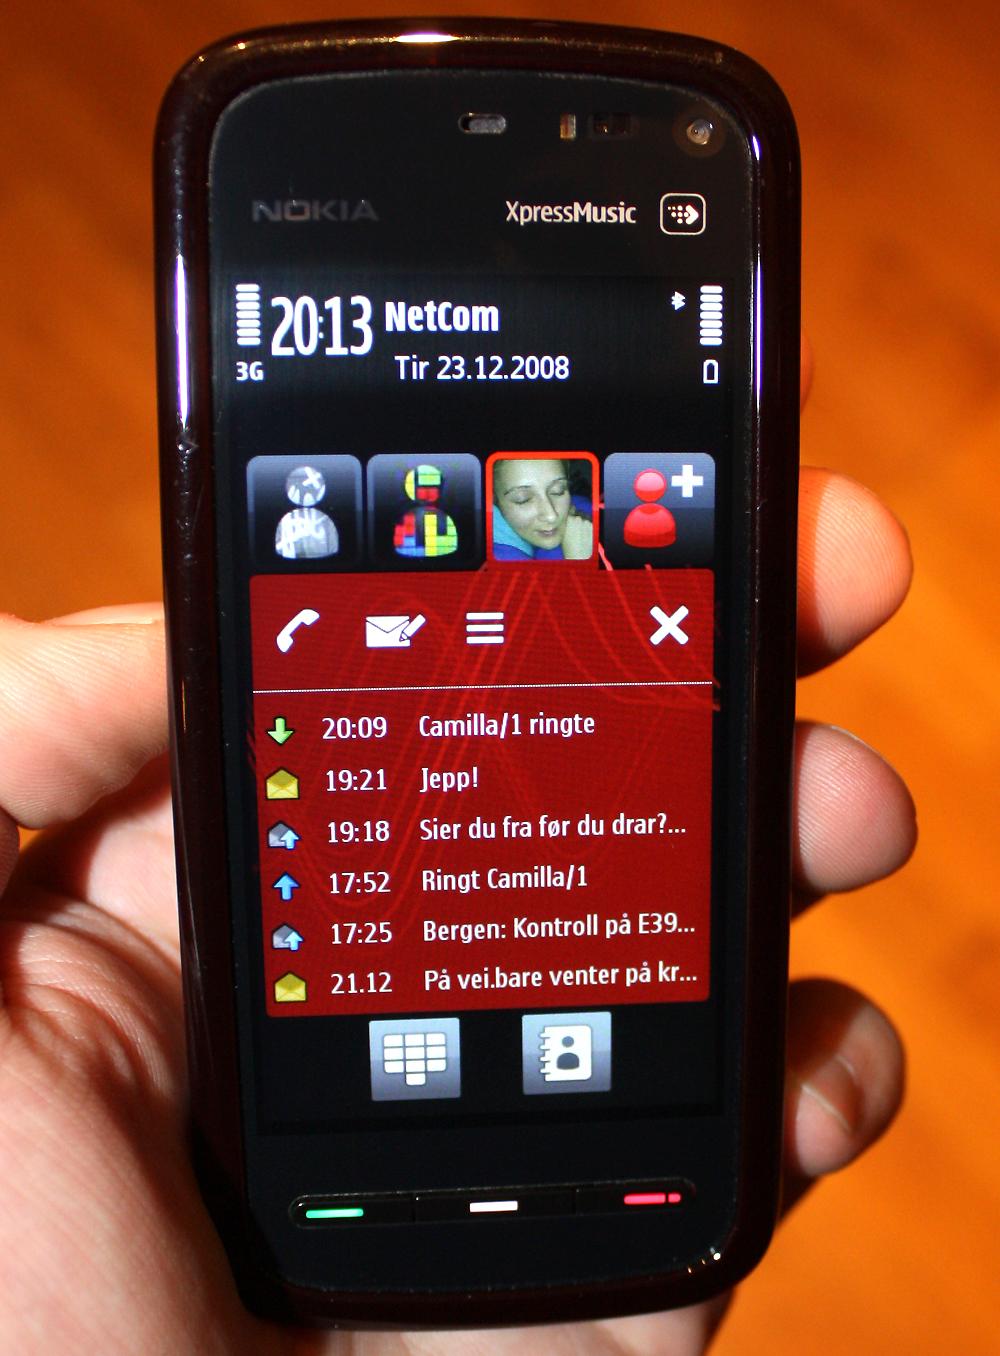 Få måneder etter testen av iPhone 3G testet vi Nokia 5800 Tube. "Dette er ingen iPhone" var et av punktene i testkonklusjonen. Den målestokken ble med oss hele veien til Android ble et modent operativsystem.Foto: Marius Valle, Amobil.no